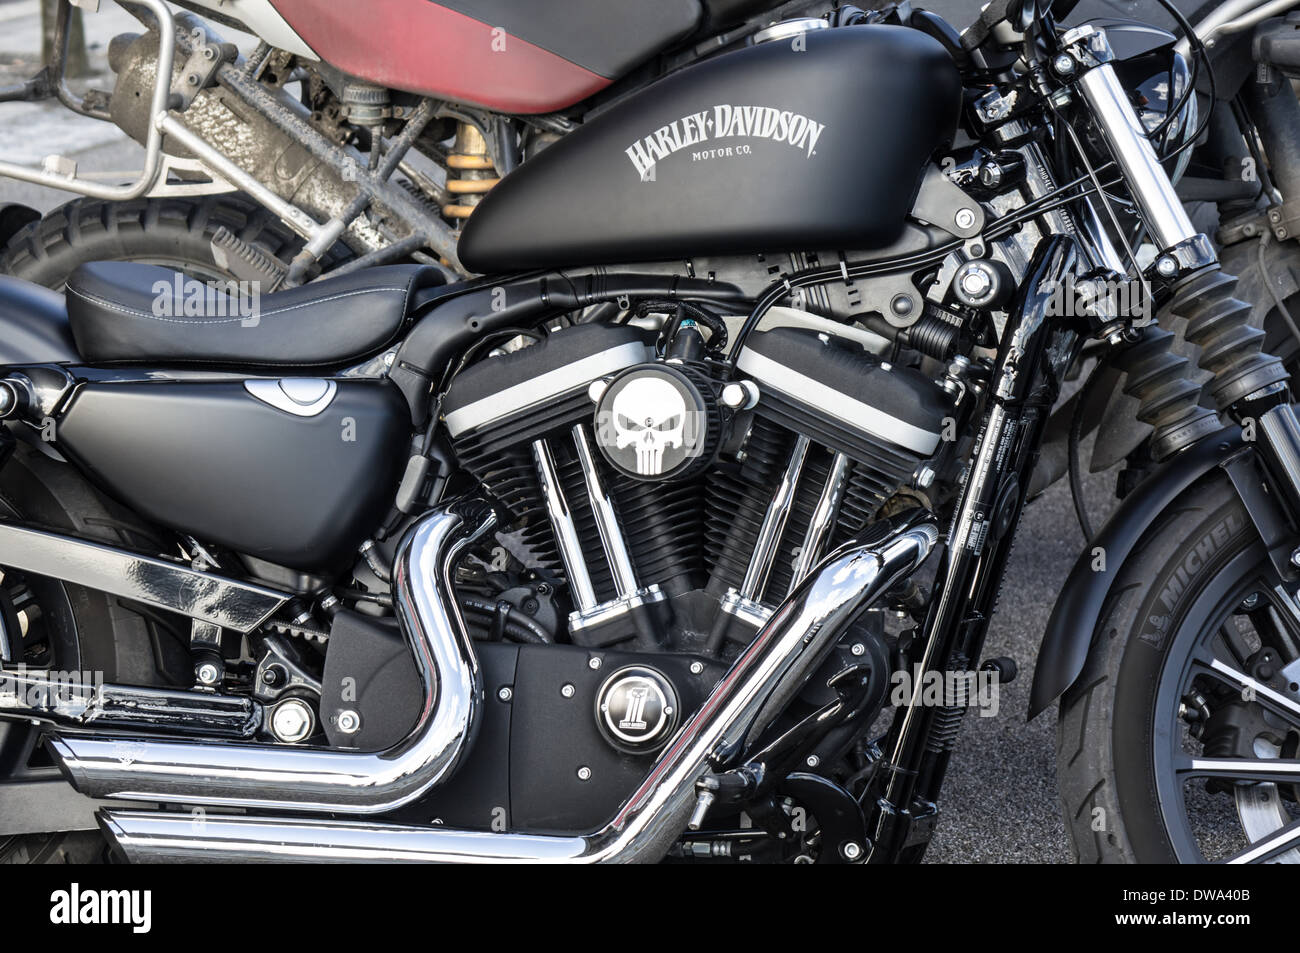 Harley-Davidson motorcycle, London England United Kingdom UK Stock Photo